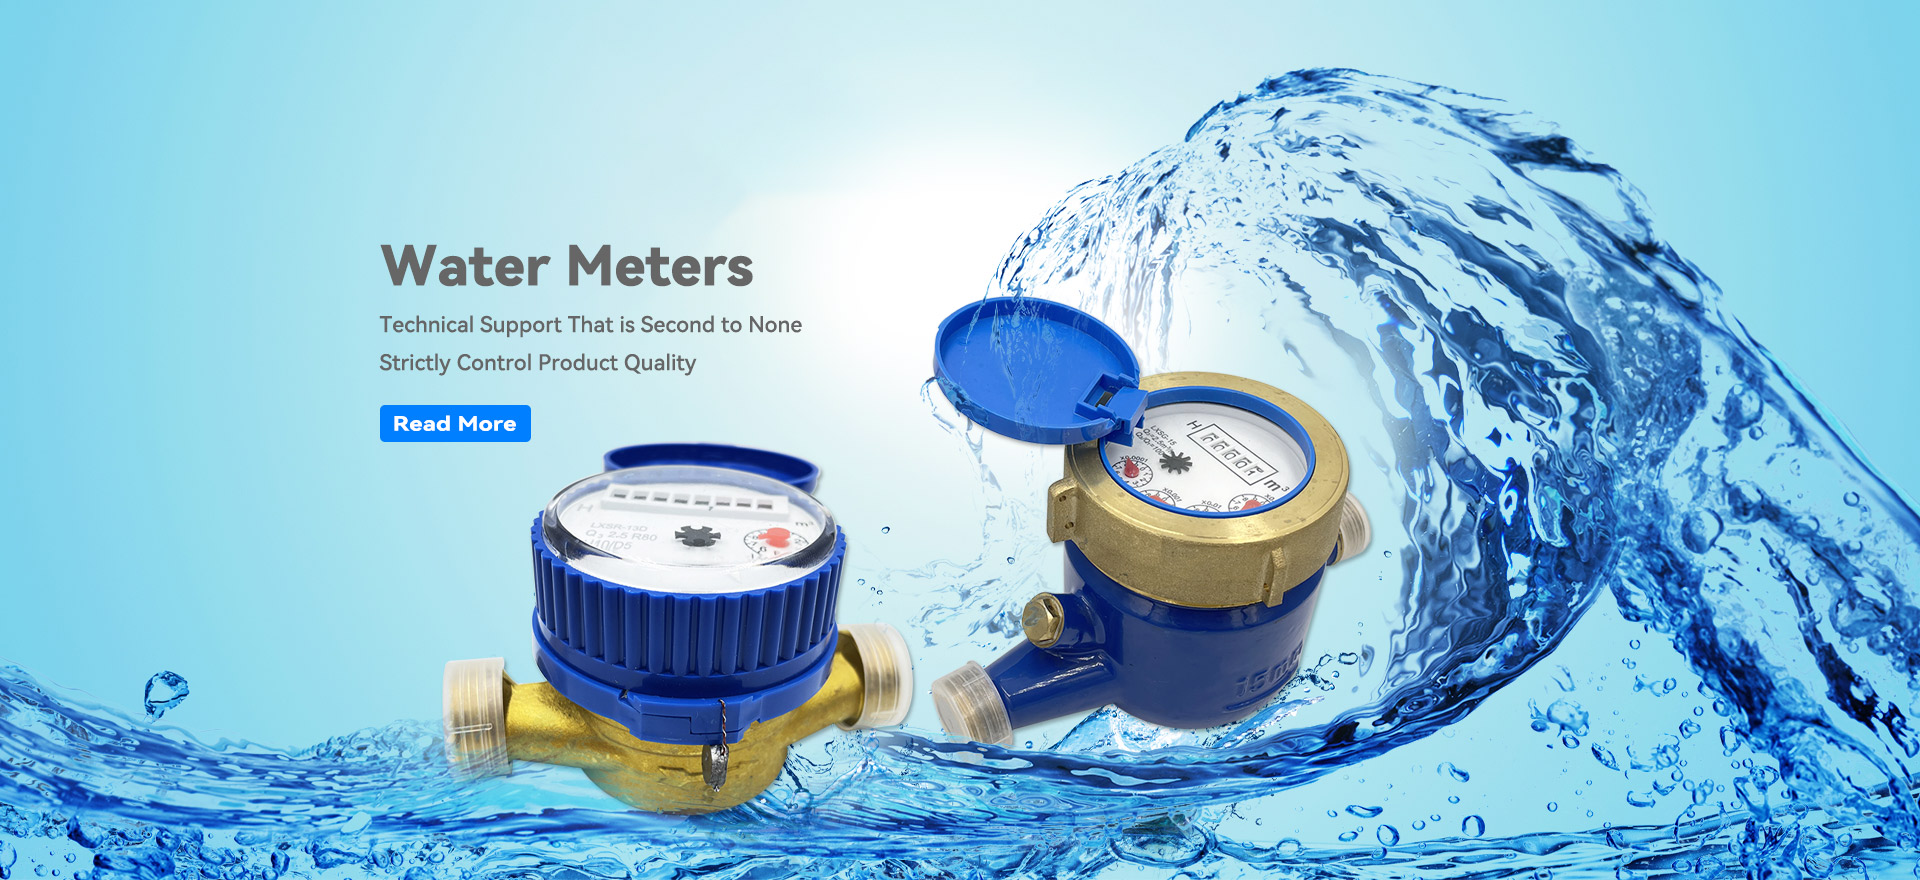 Fabricantes de Medidores de Água da China